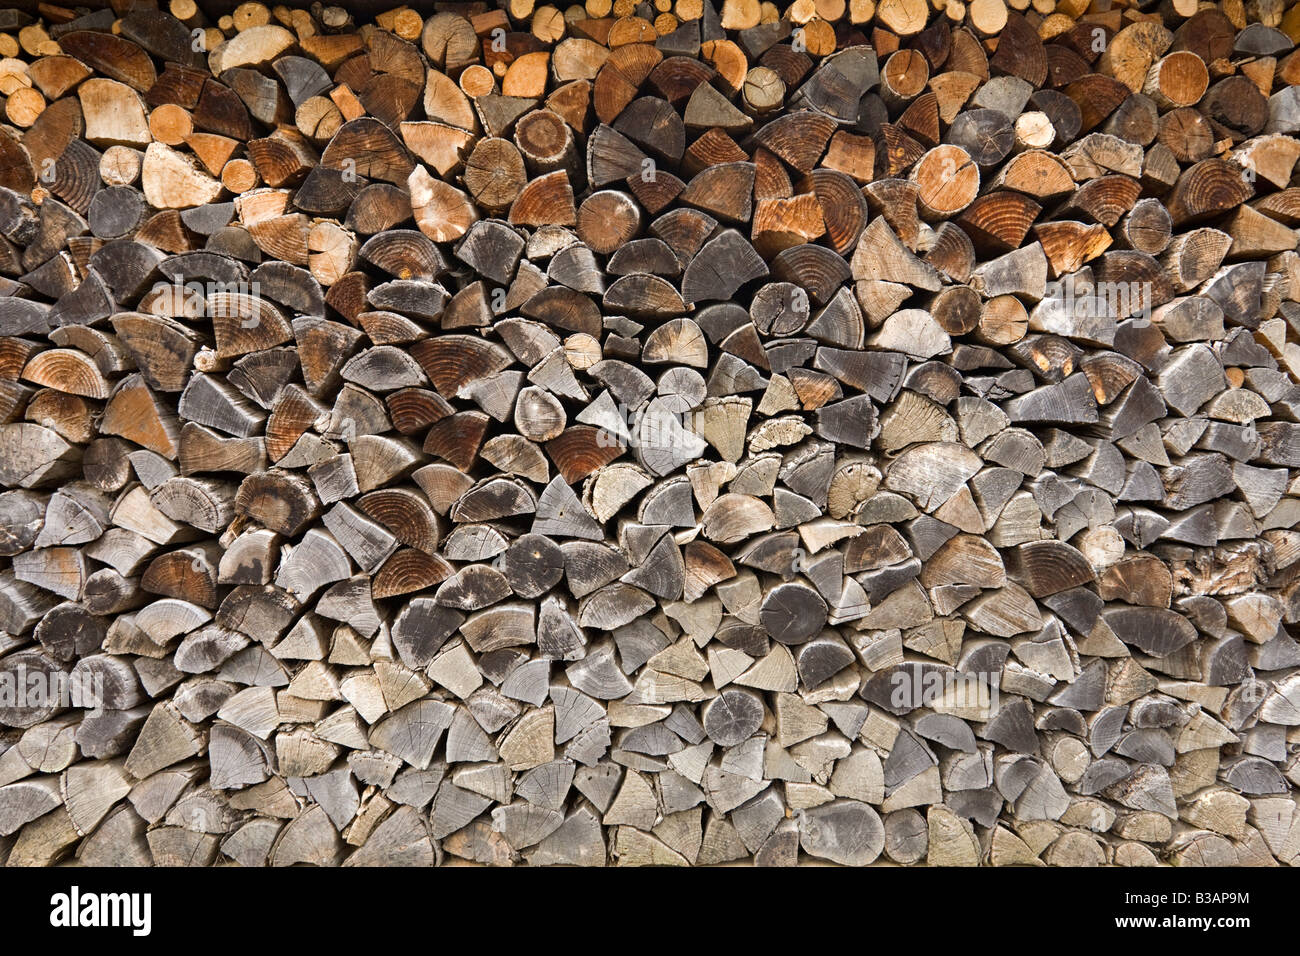 A dry firewood stack. Pile de bois de chauffage sec Stock Photo